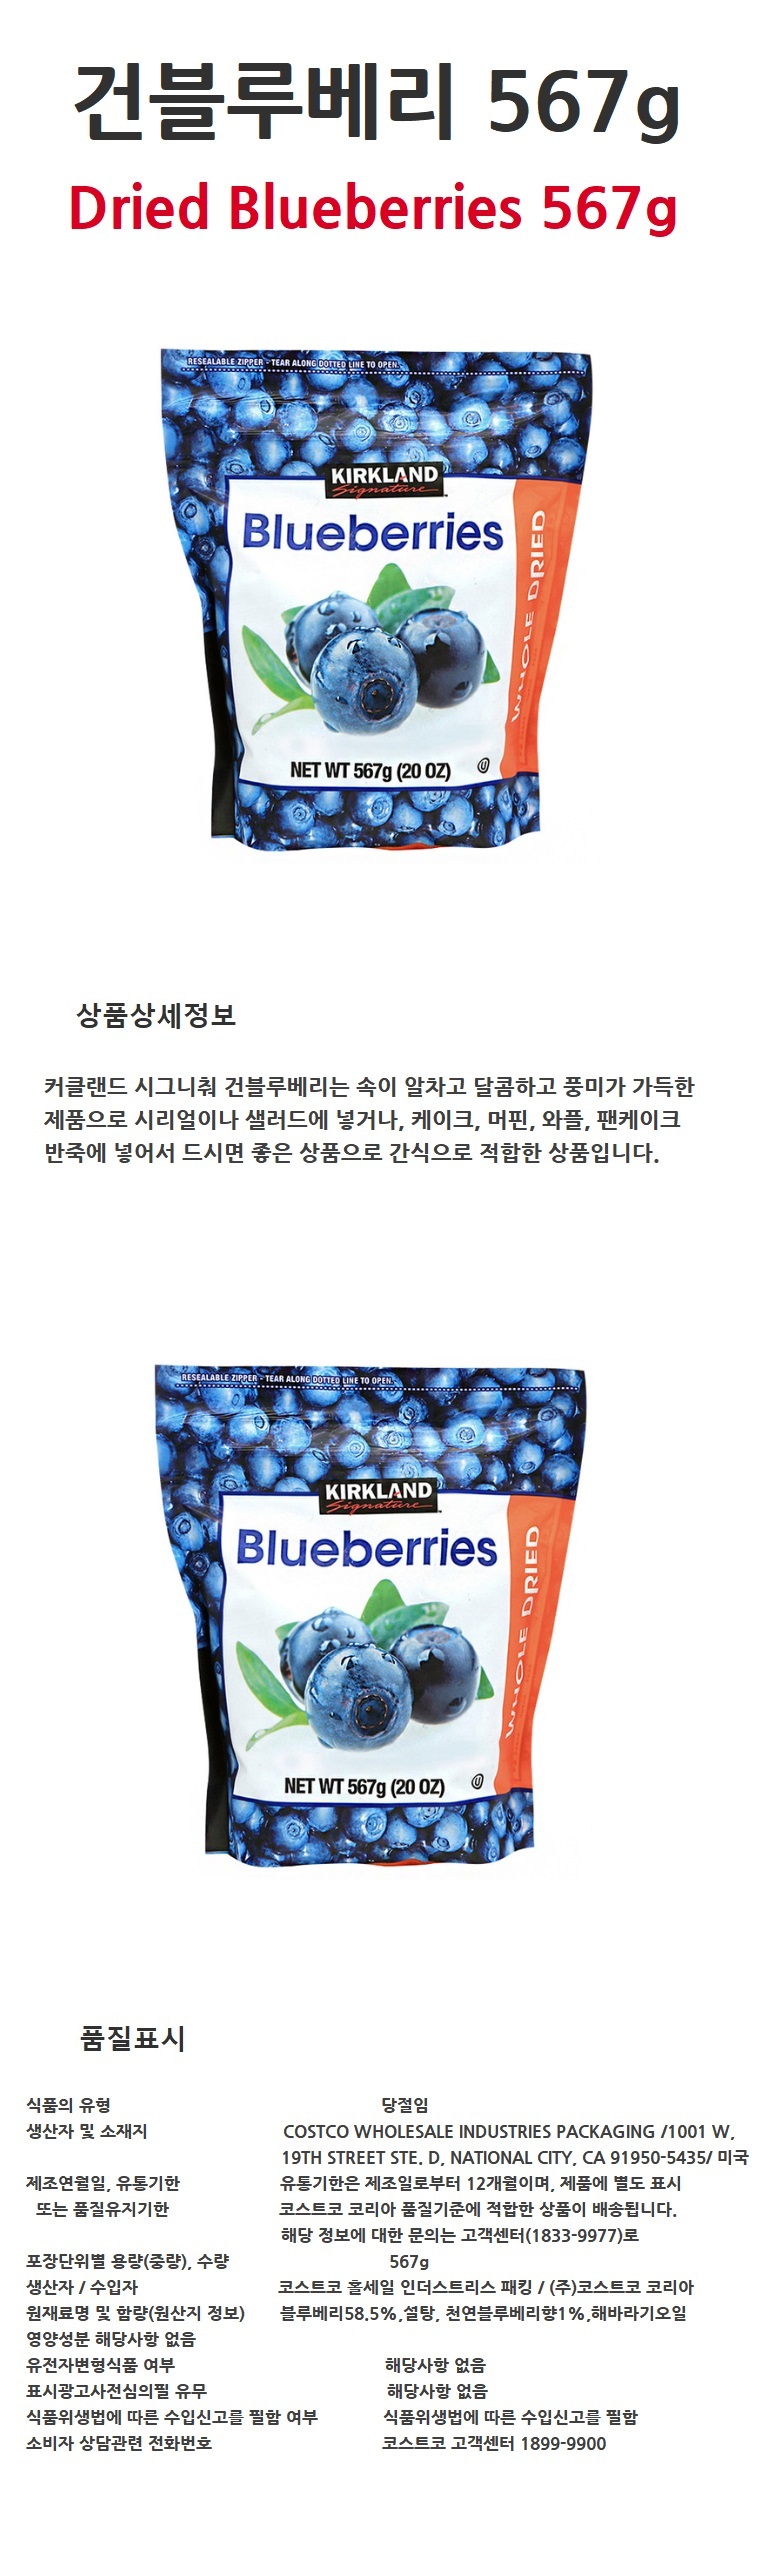 blueberries567g_12490.jpg